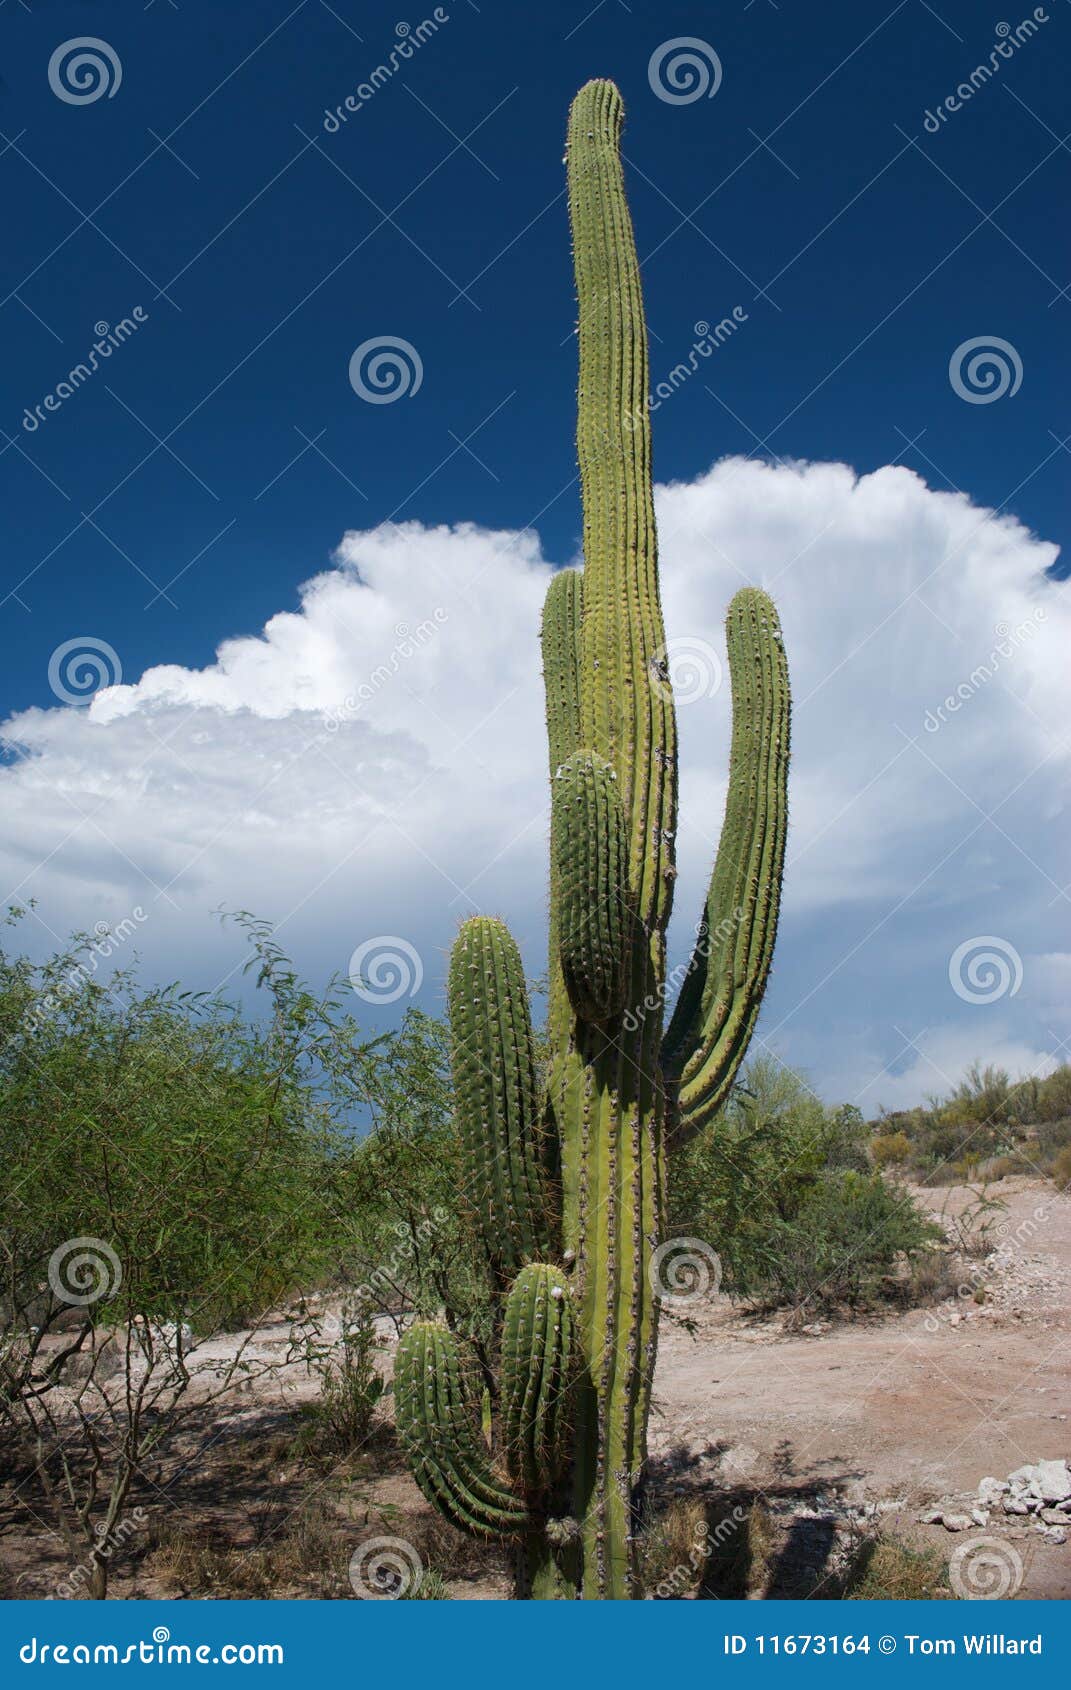 sahuaro cactus